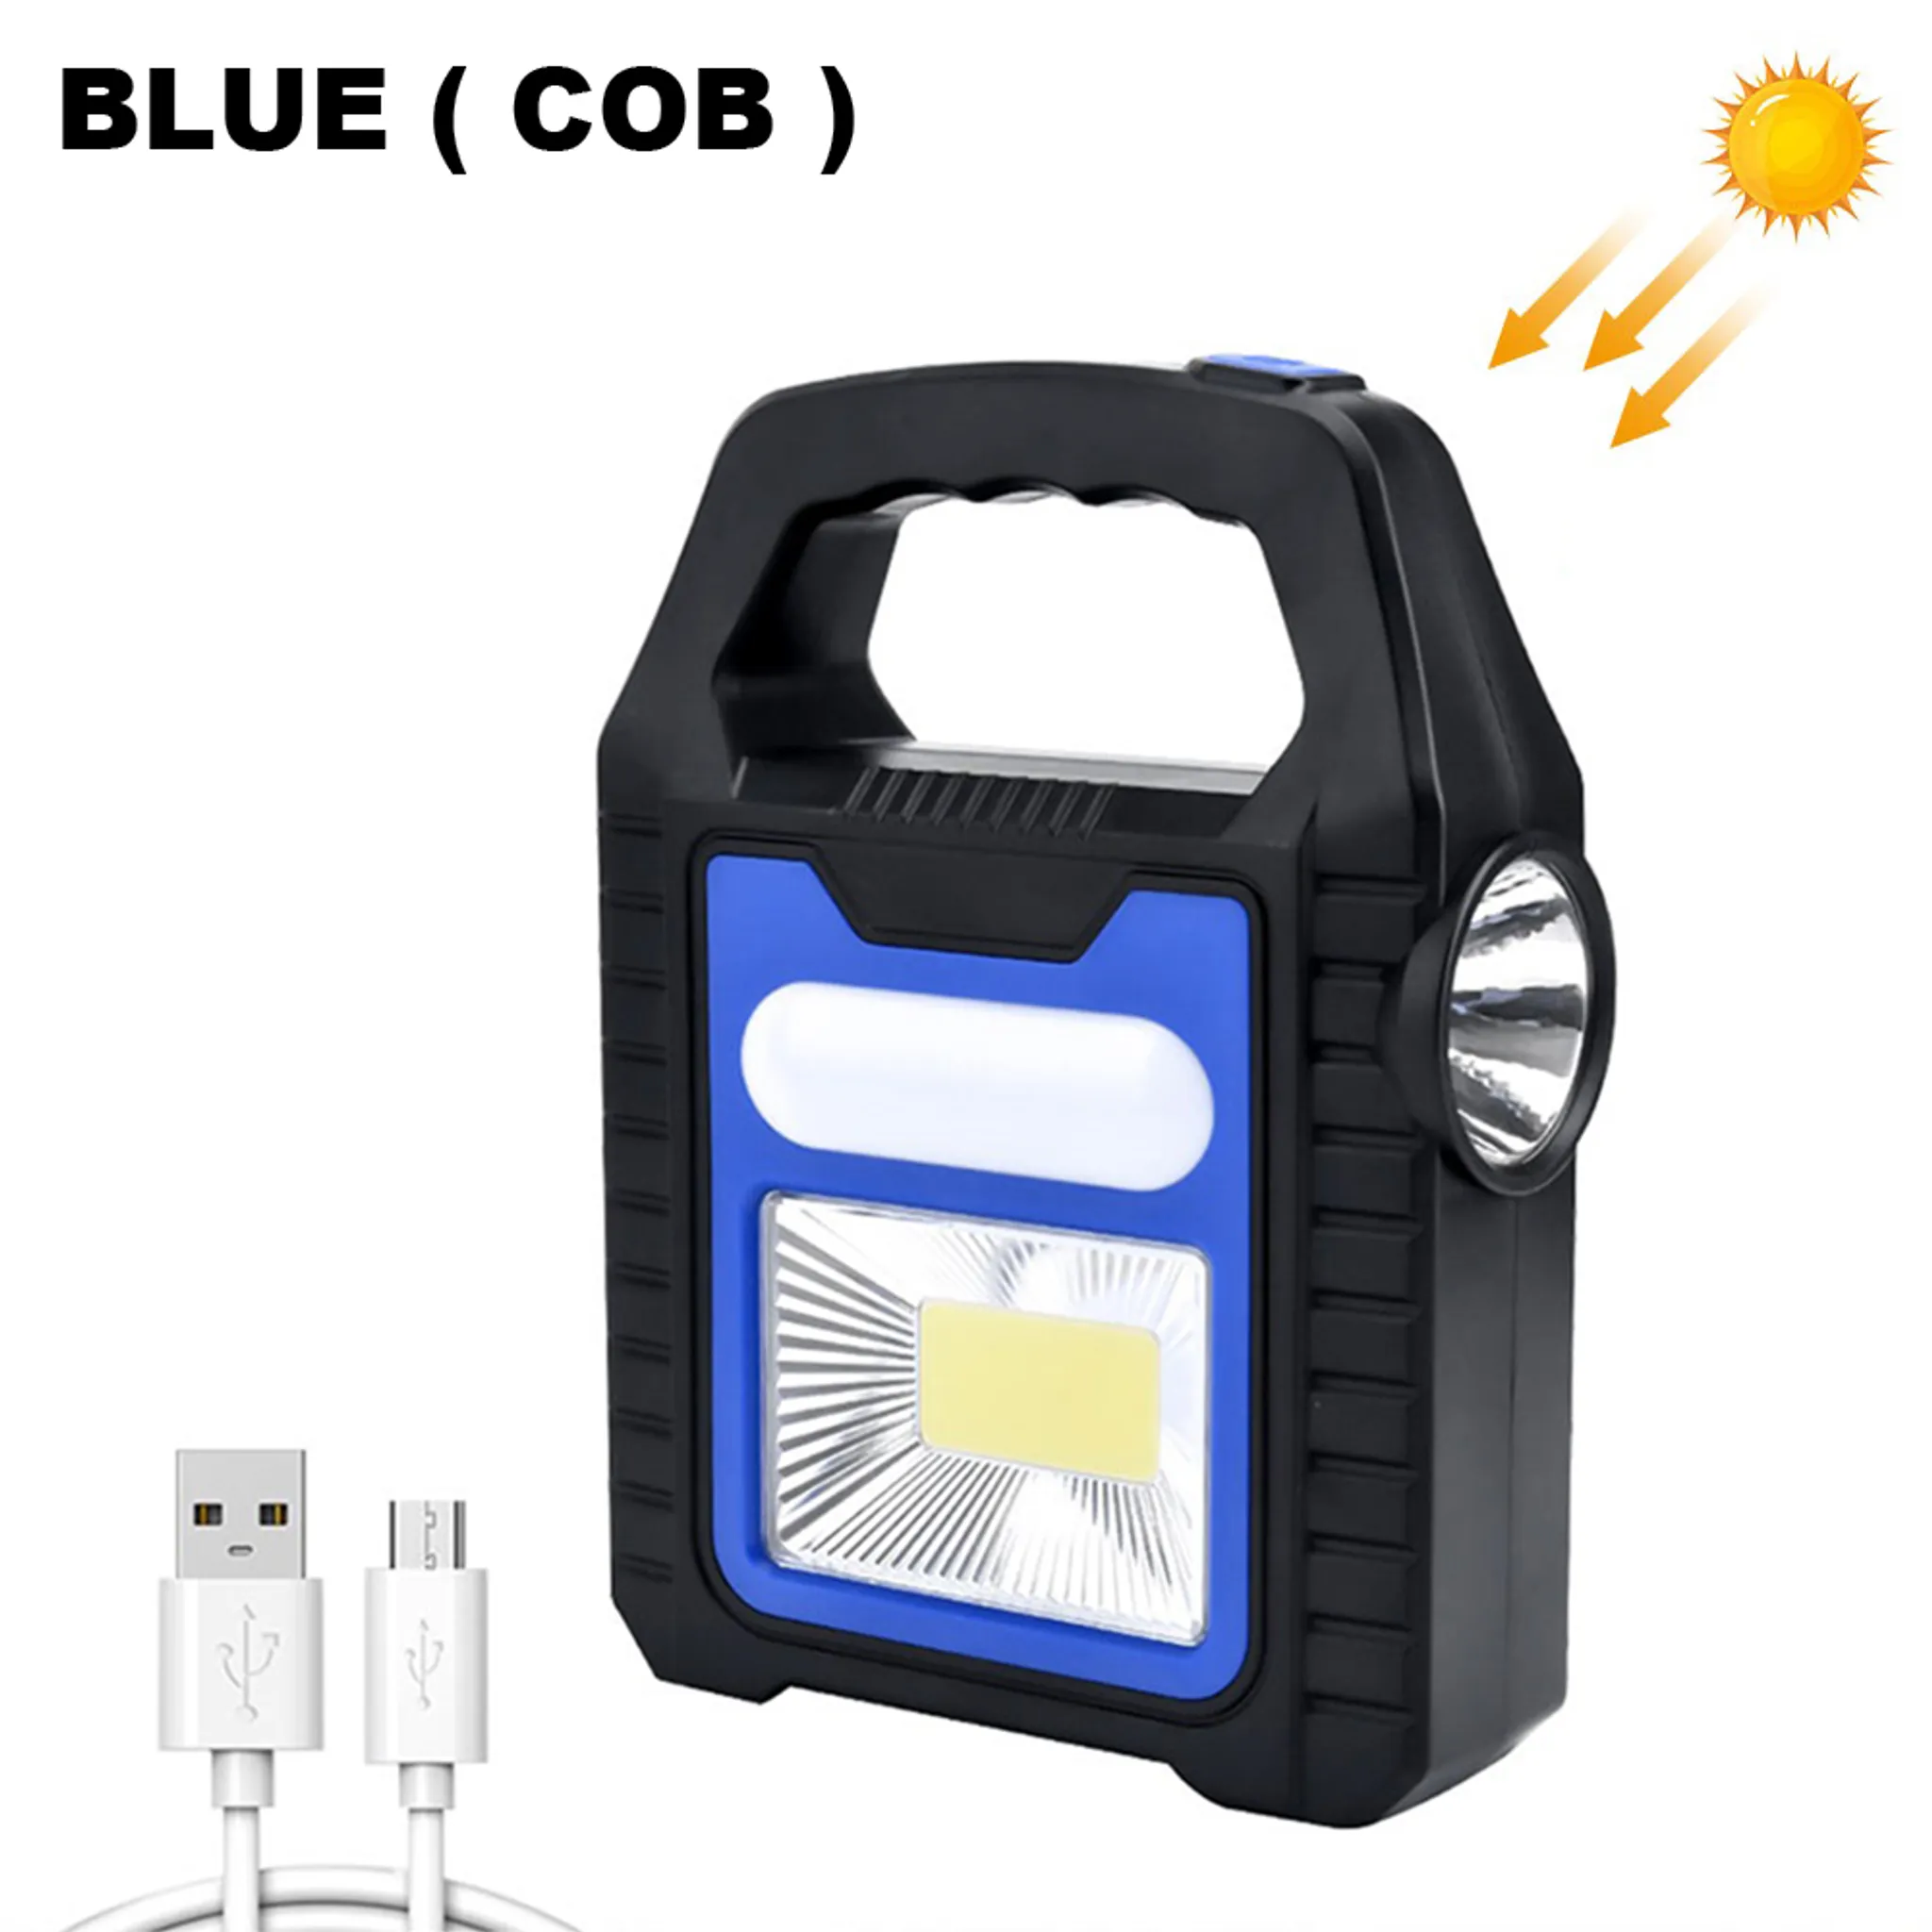 Tragbare Mini-LED-Taschenlampe für Draußen. aufladbar über USB mit Schlüsselanhänger 